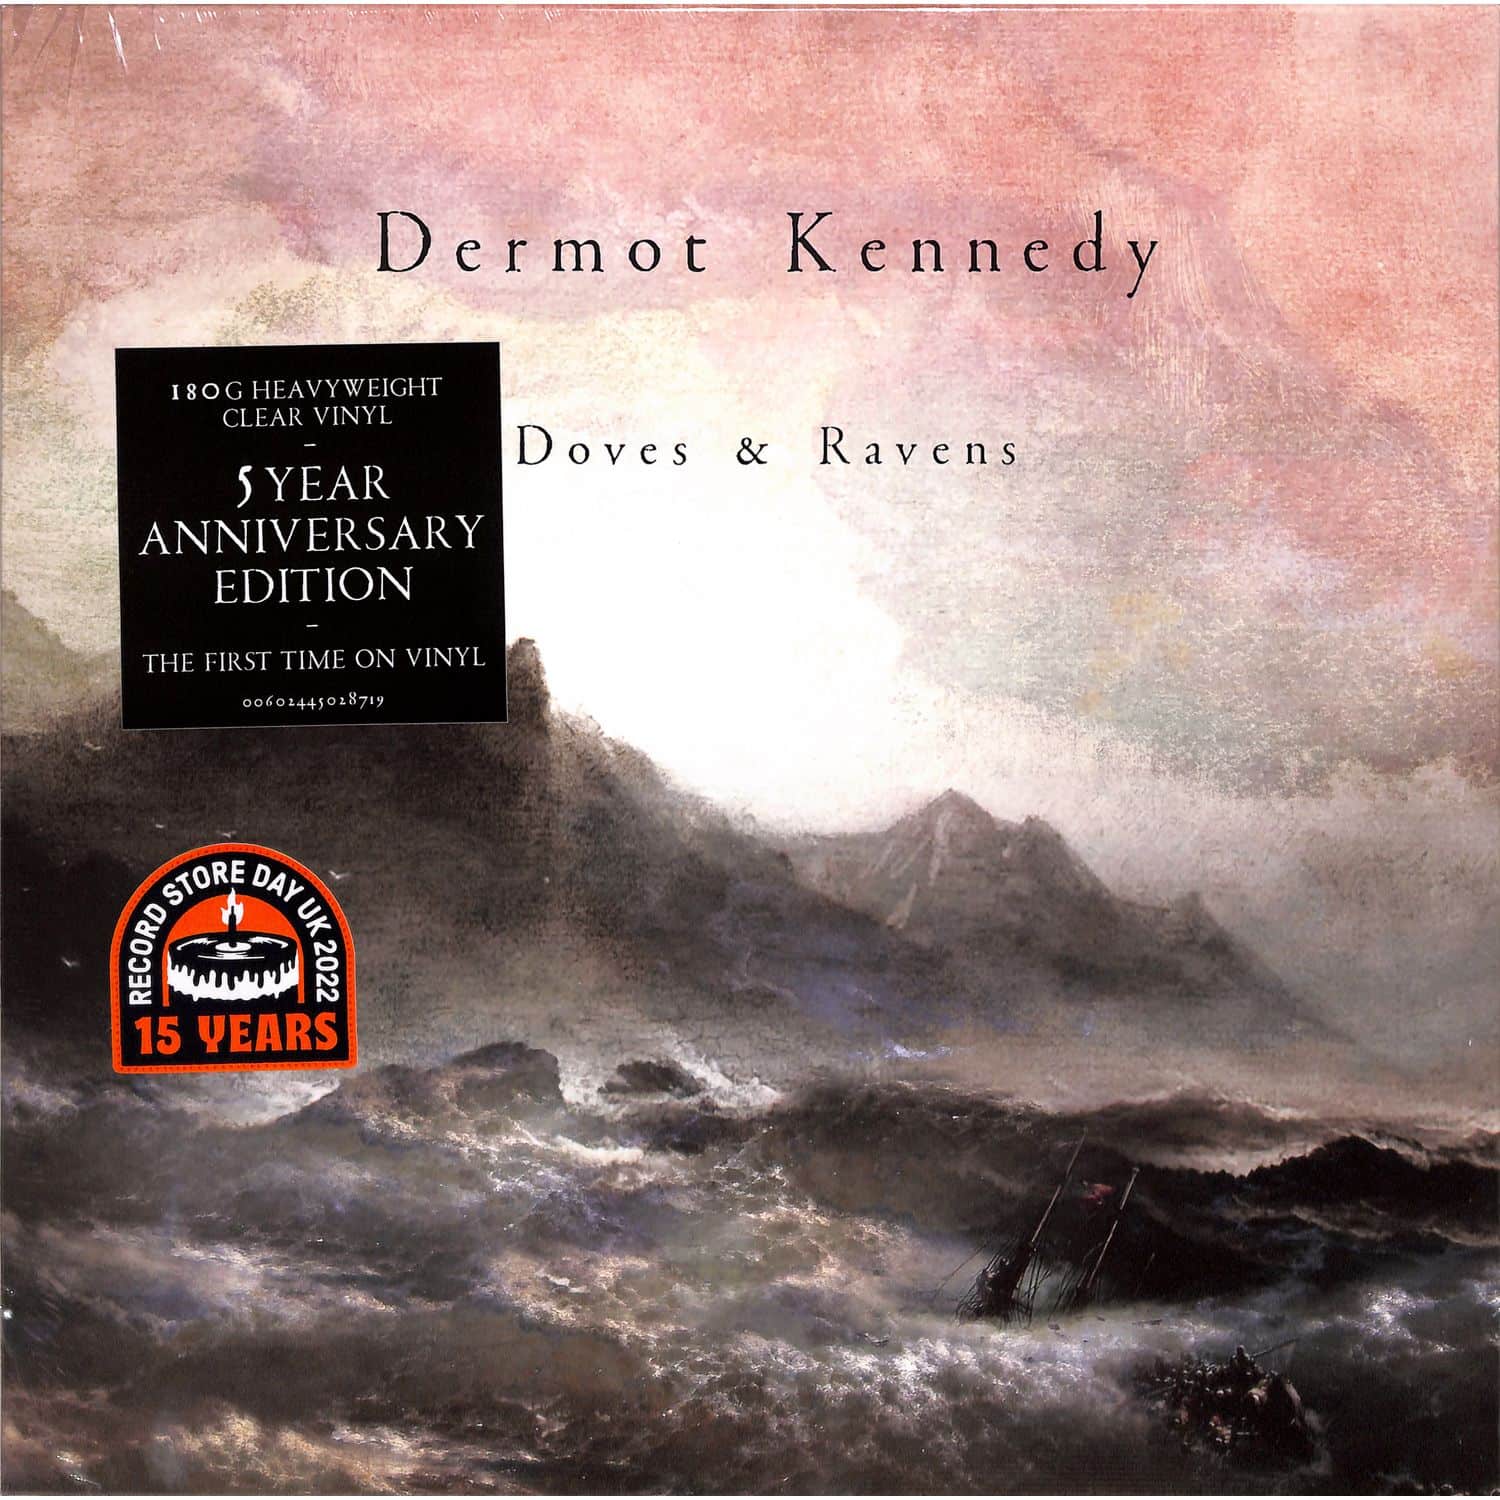 Dermot Kennedy - DOVES & RAVENS 